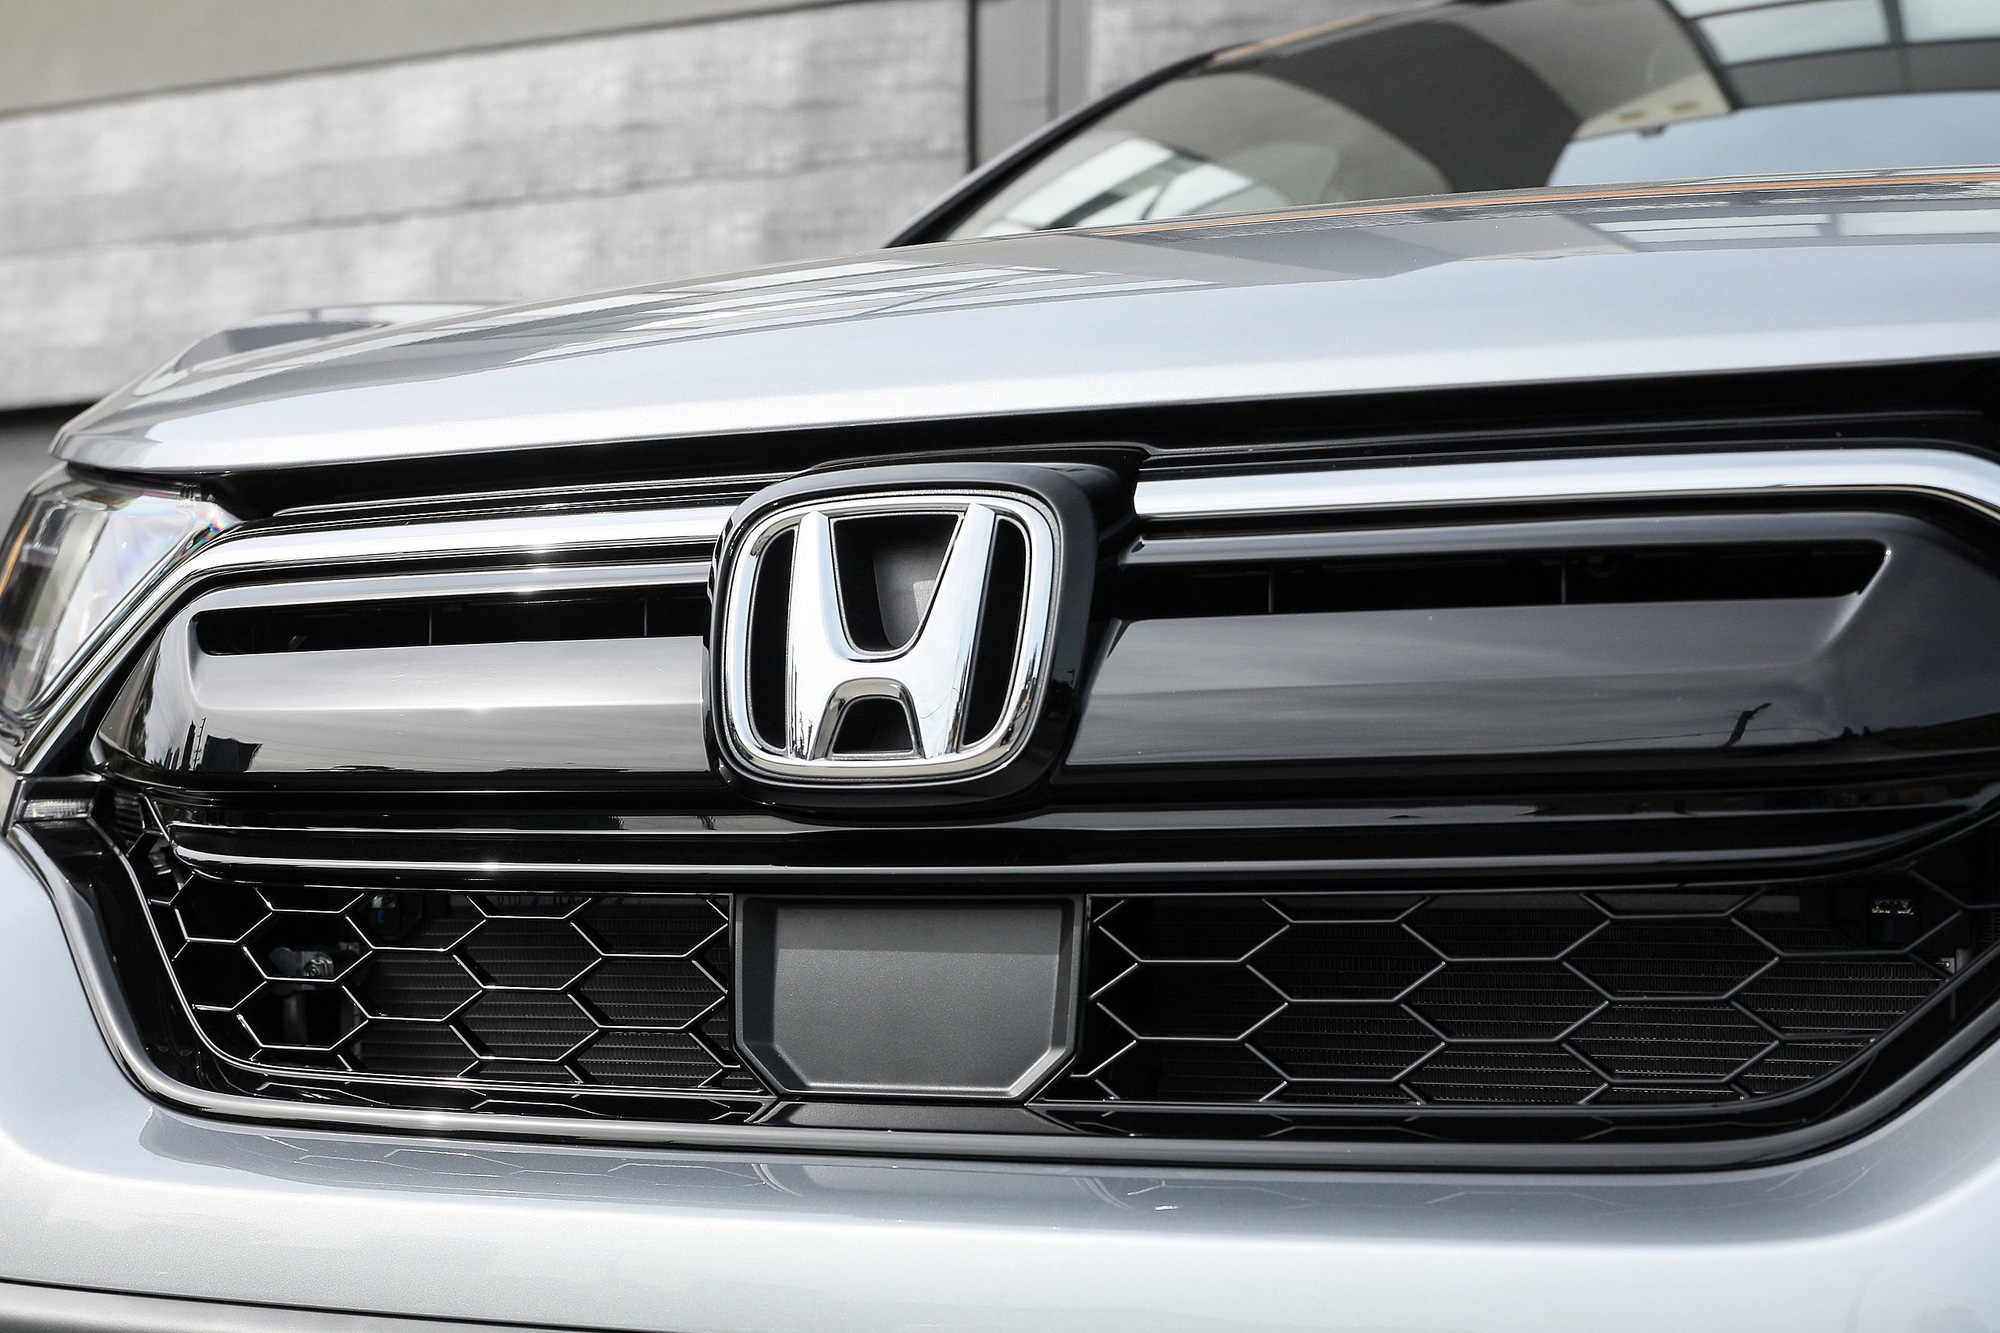 Góc khó tin: Honda vẫn lãi lớn trong năm 2020 dù doanh thu, doanh số đều giảm